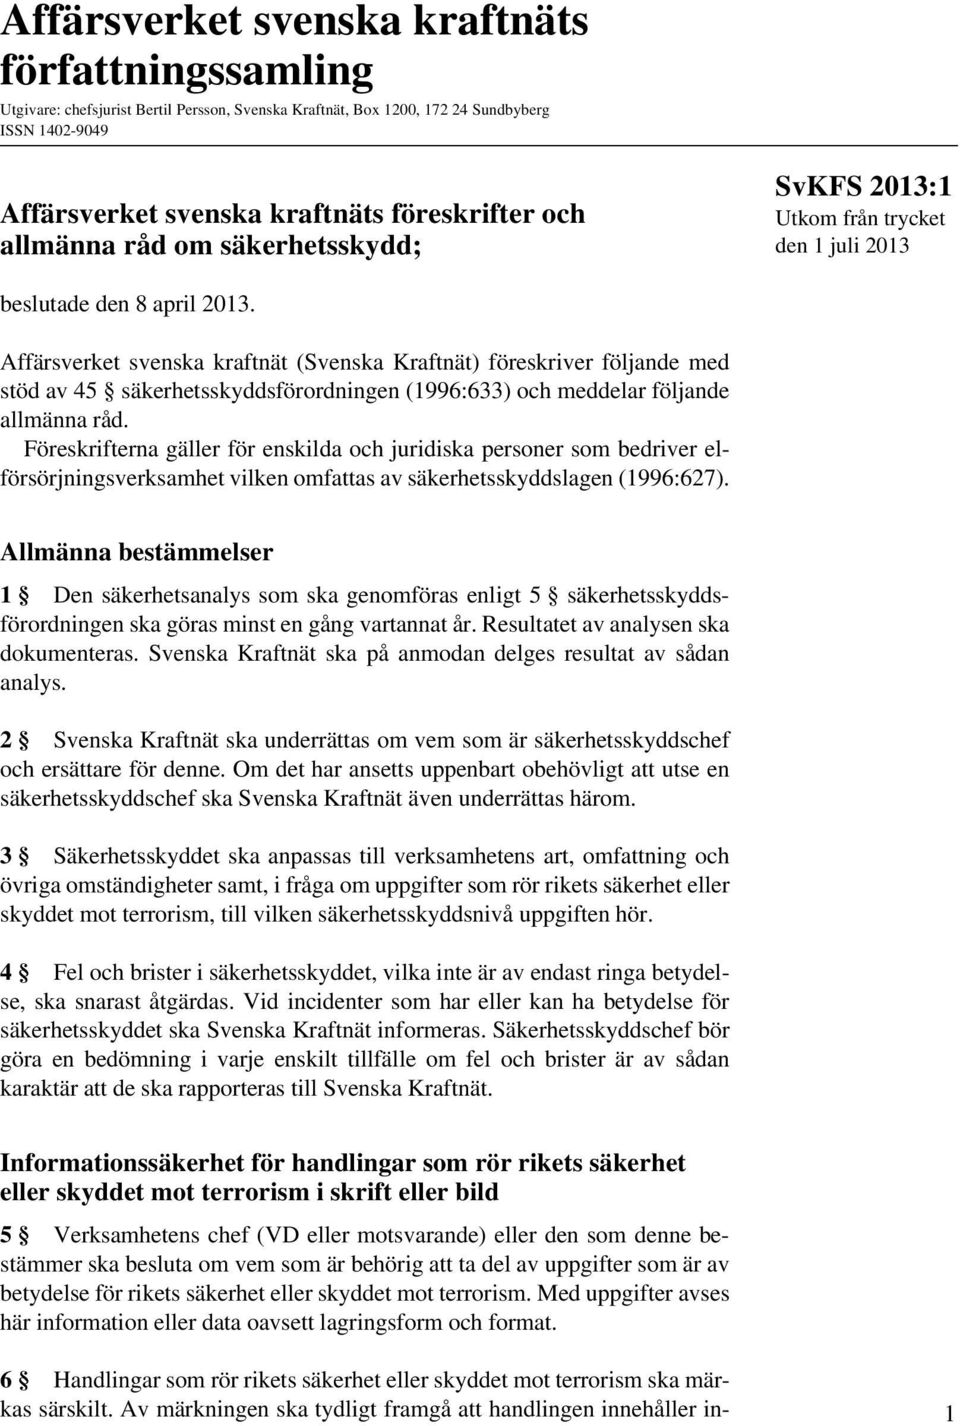 Affärsverket svenska kraftnät (Svenska Kraftnät) föreskriver följande med stöd av 45 säkerhetsskyddsförordningen (1996:633) och meddelar följande allmänna råd.